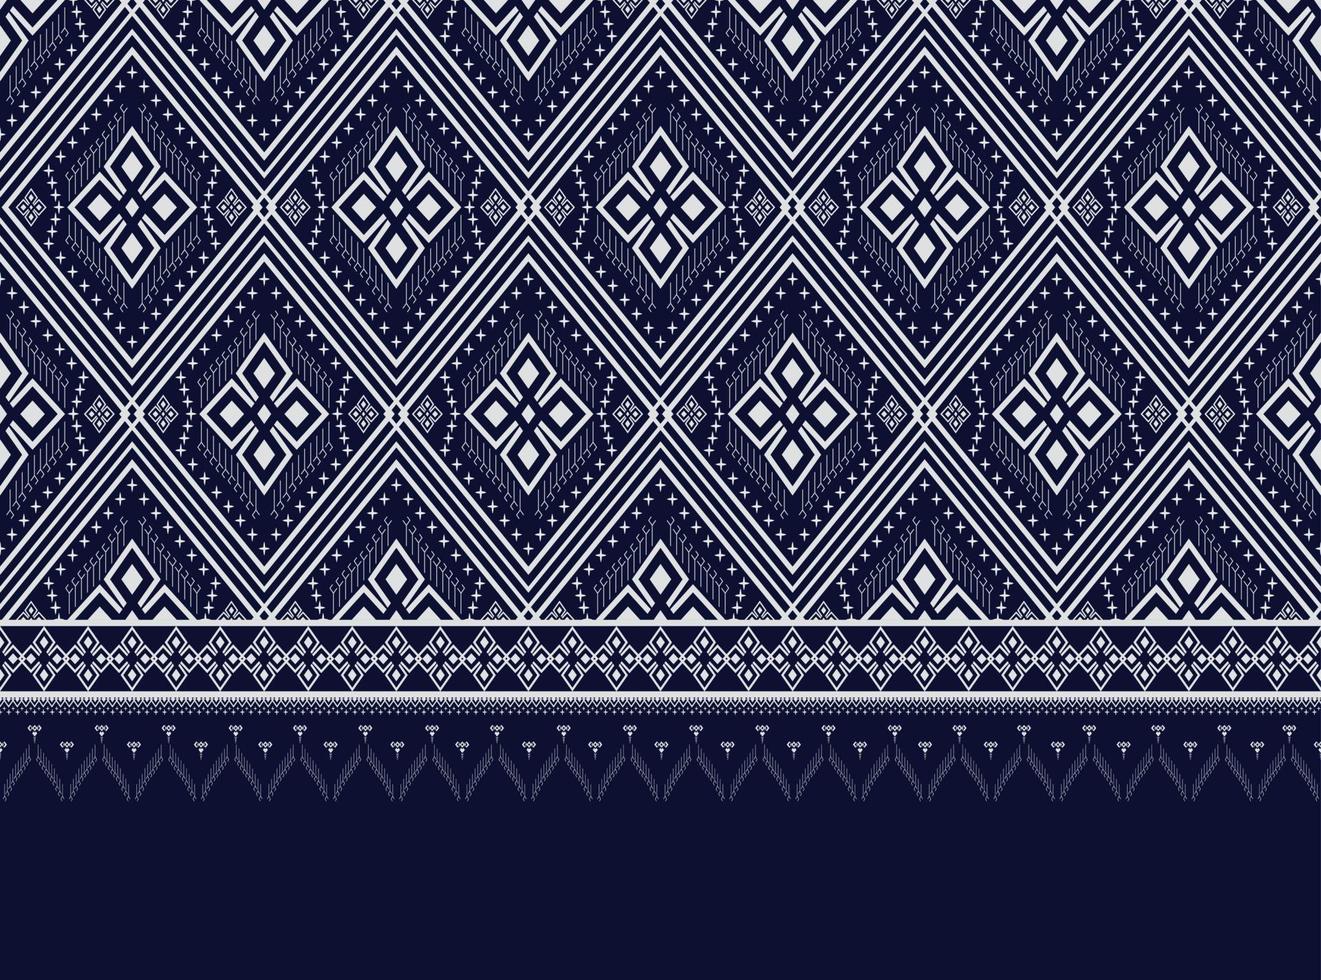 patrón étnico geométrico azul oscuro para fondo o papel pintado y ropa, falda, alfombra, papel pintado, ropa, envoltura, batik, tela, ropa, con vector de triángulo azul oscuro, ilustración